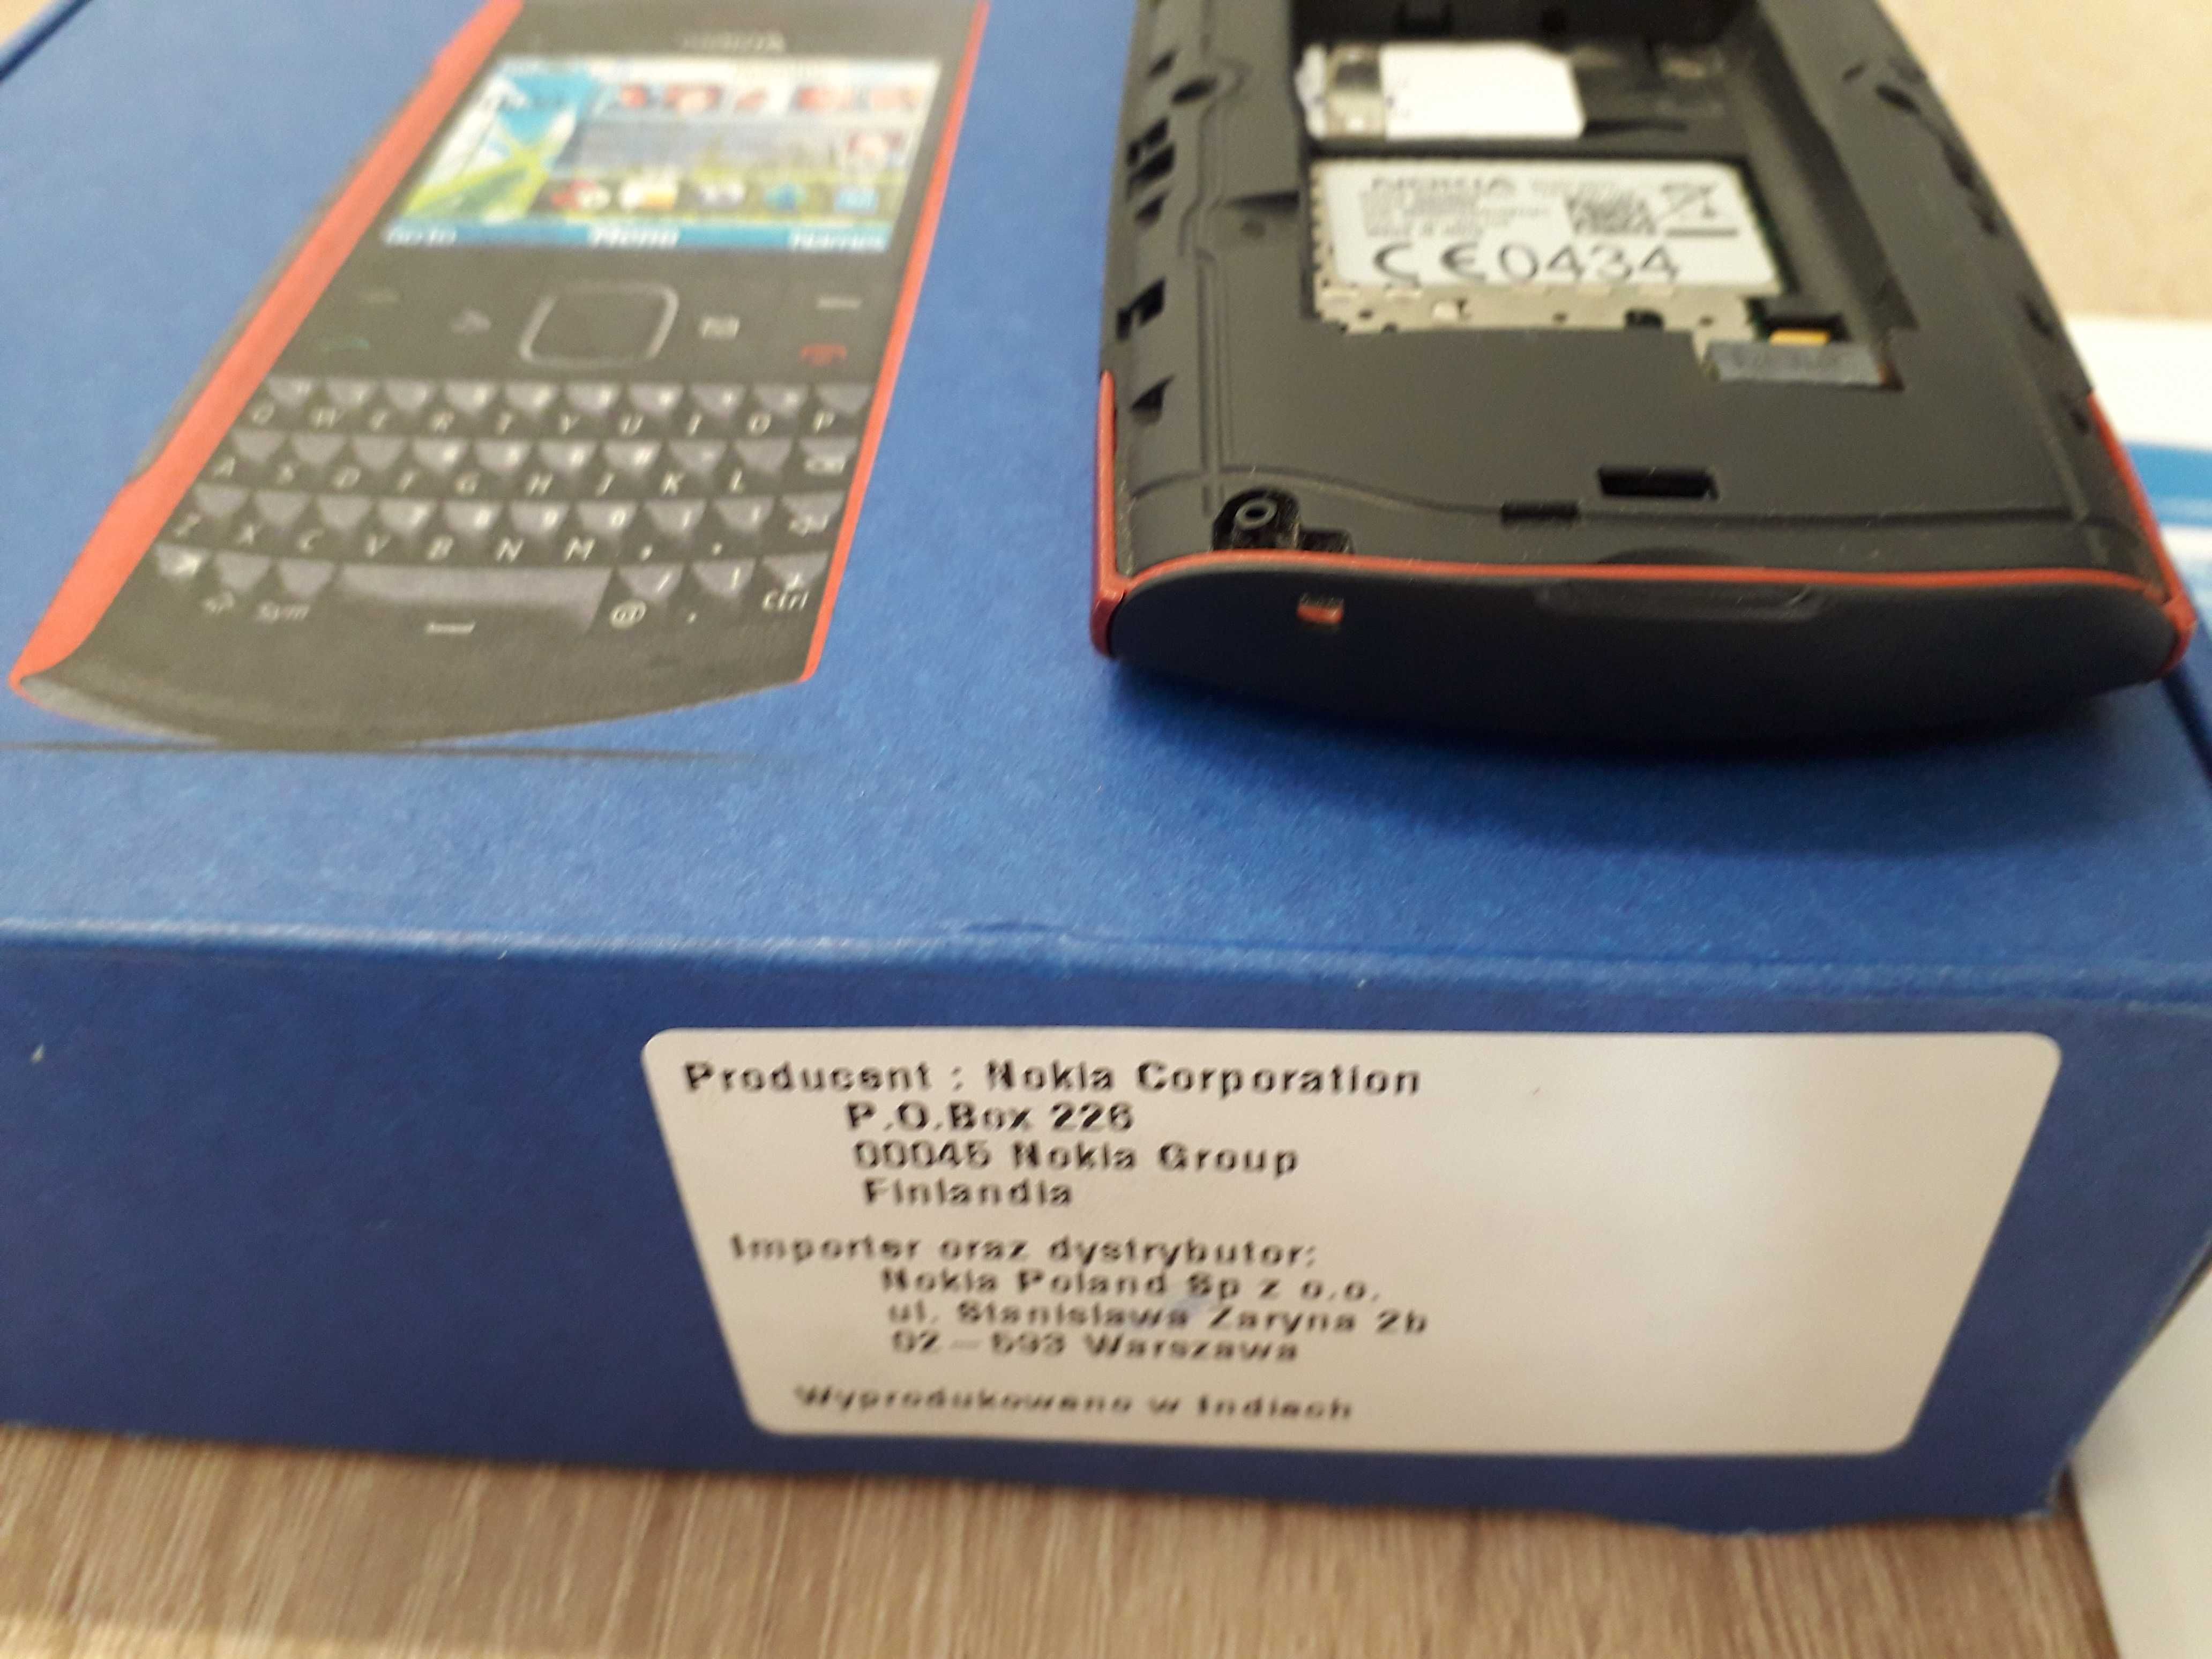 Nokia X2-01 zestaw